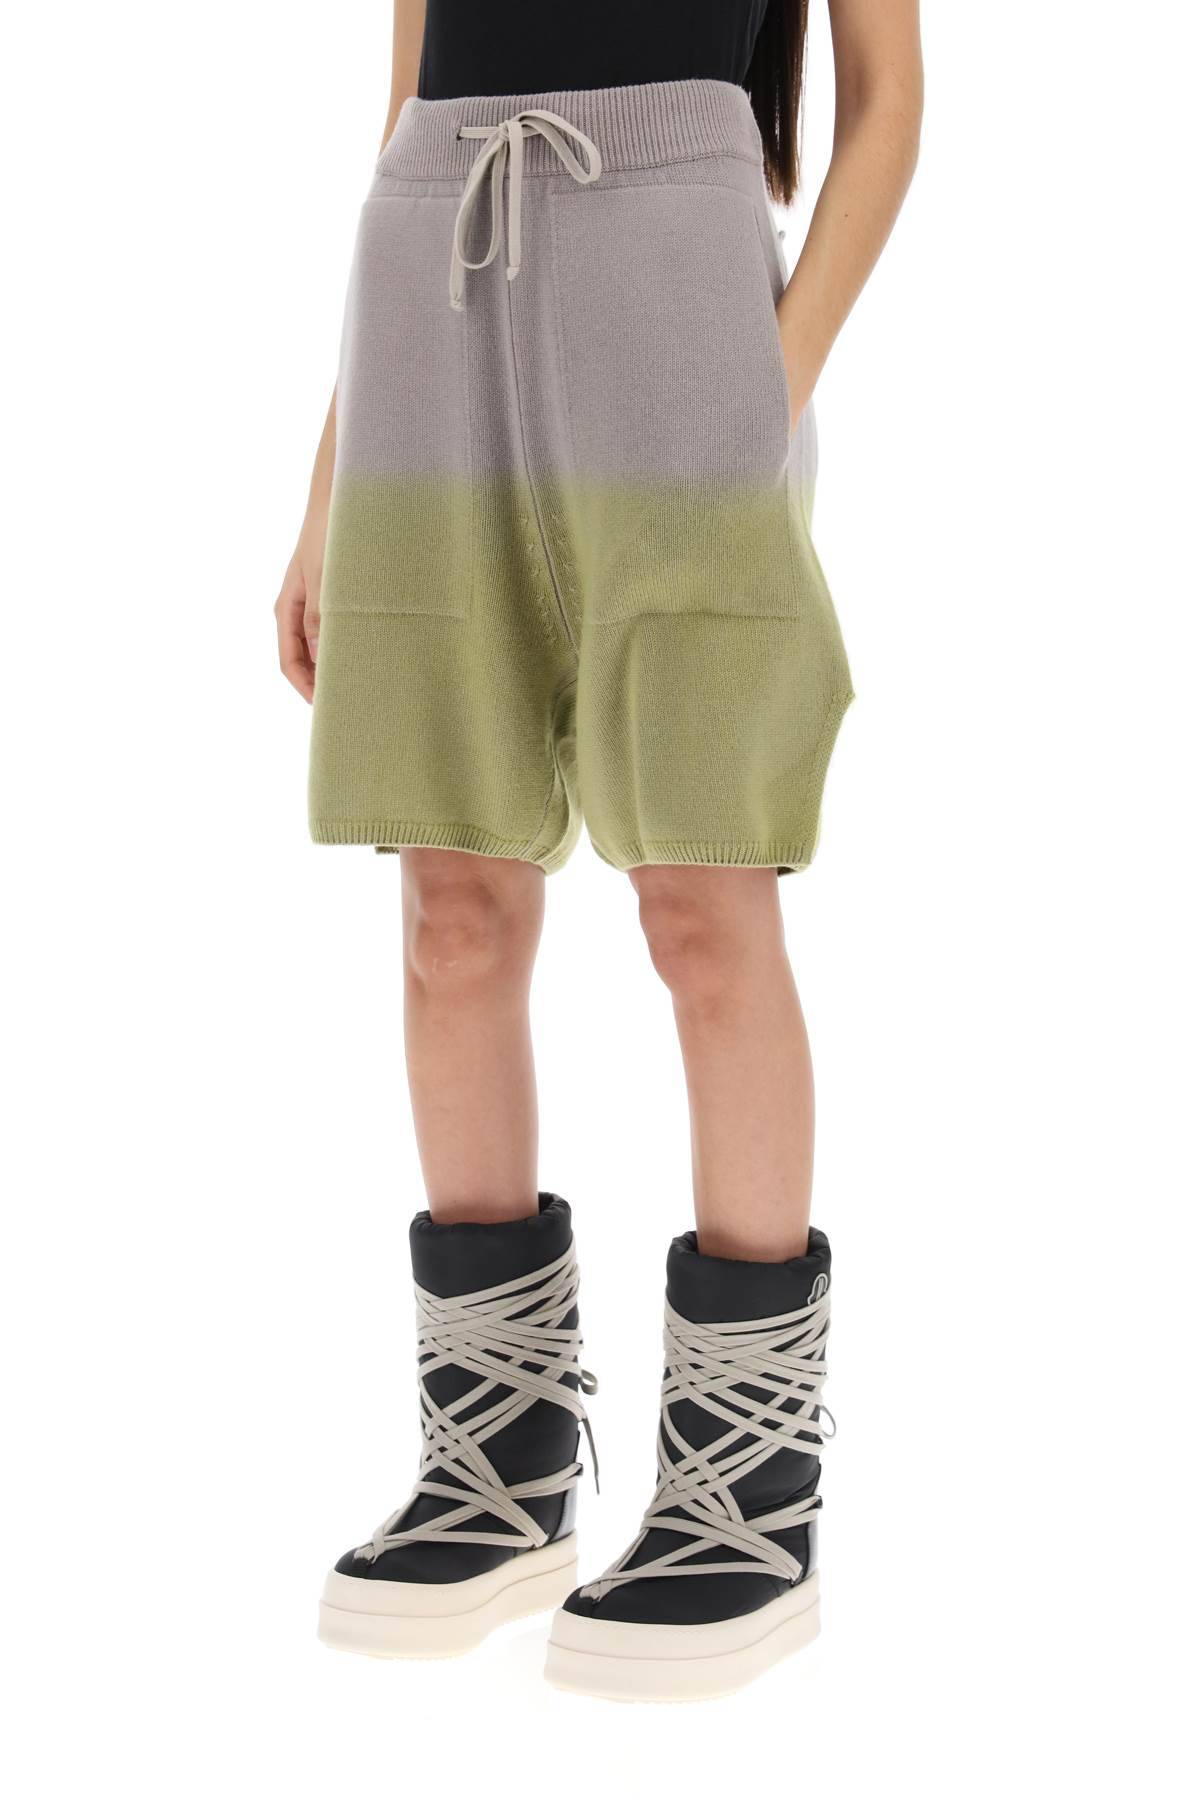 Shop Moncler Genius Loose Fit Cashmere Shorts In Beige,neutro